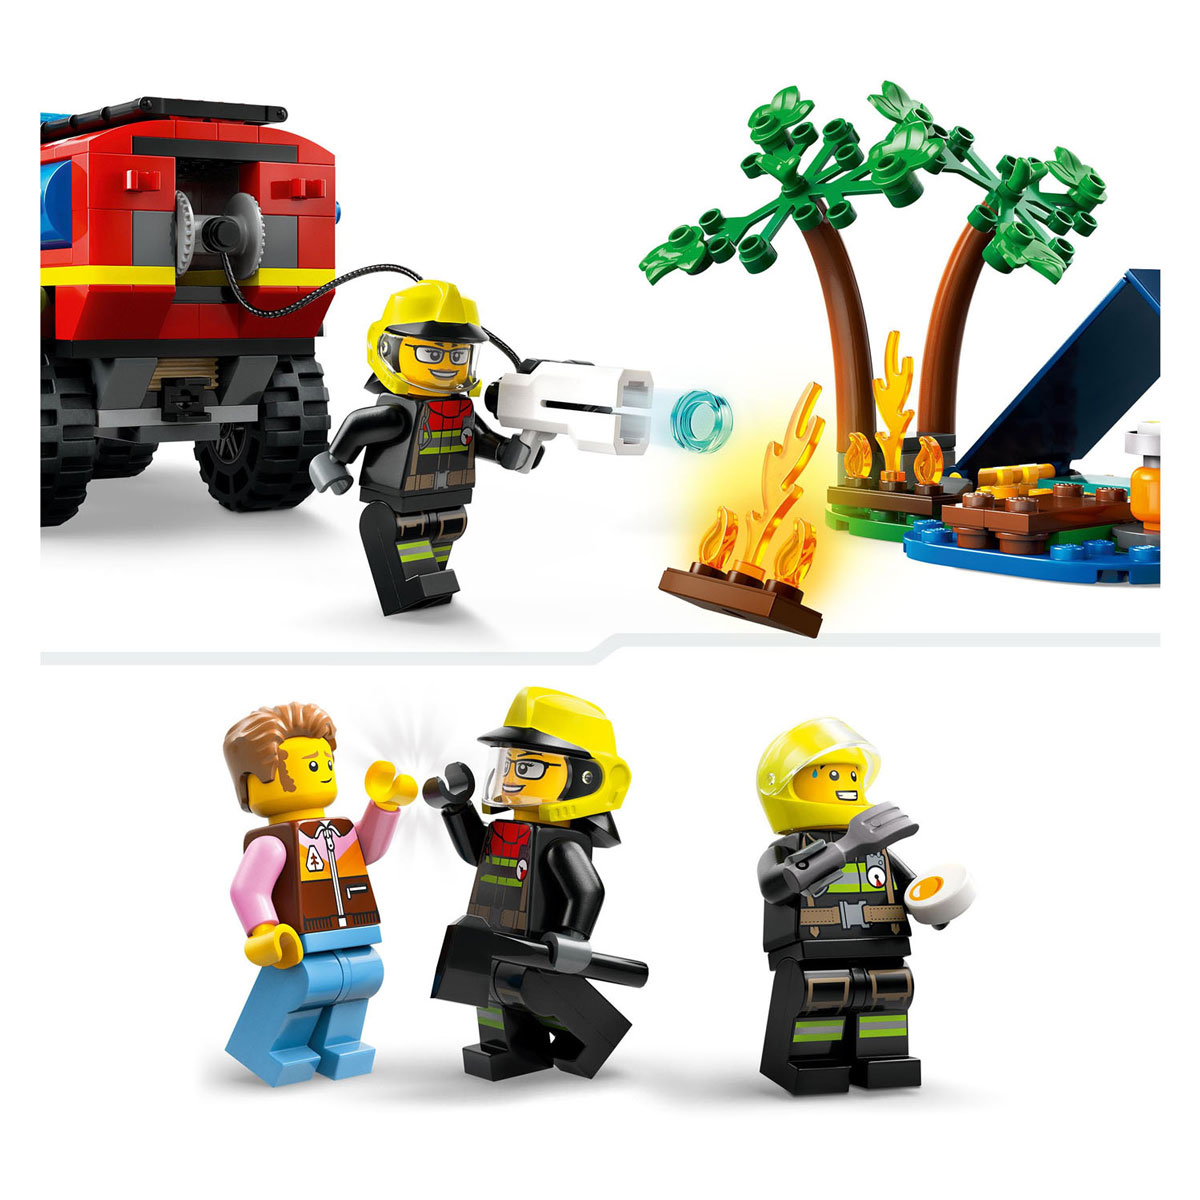 LEGO City 60412 4X4 Feuerwehrauto mit Rettungsboot